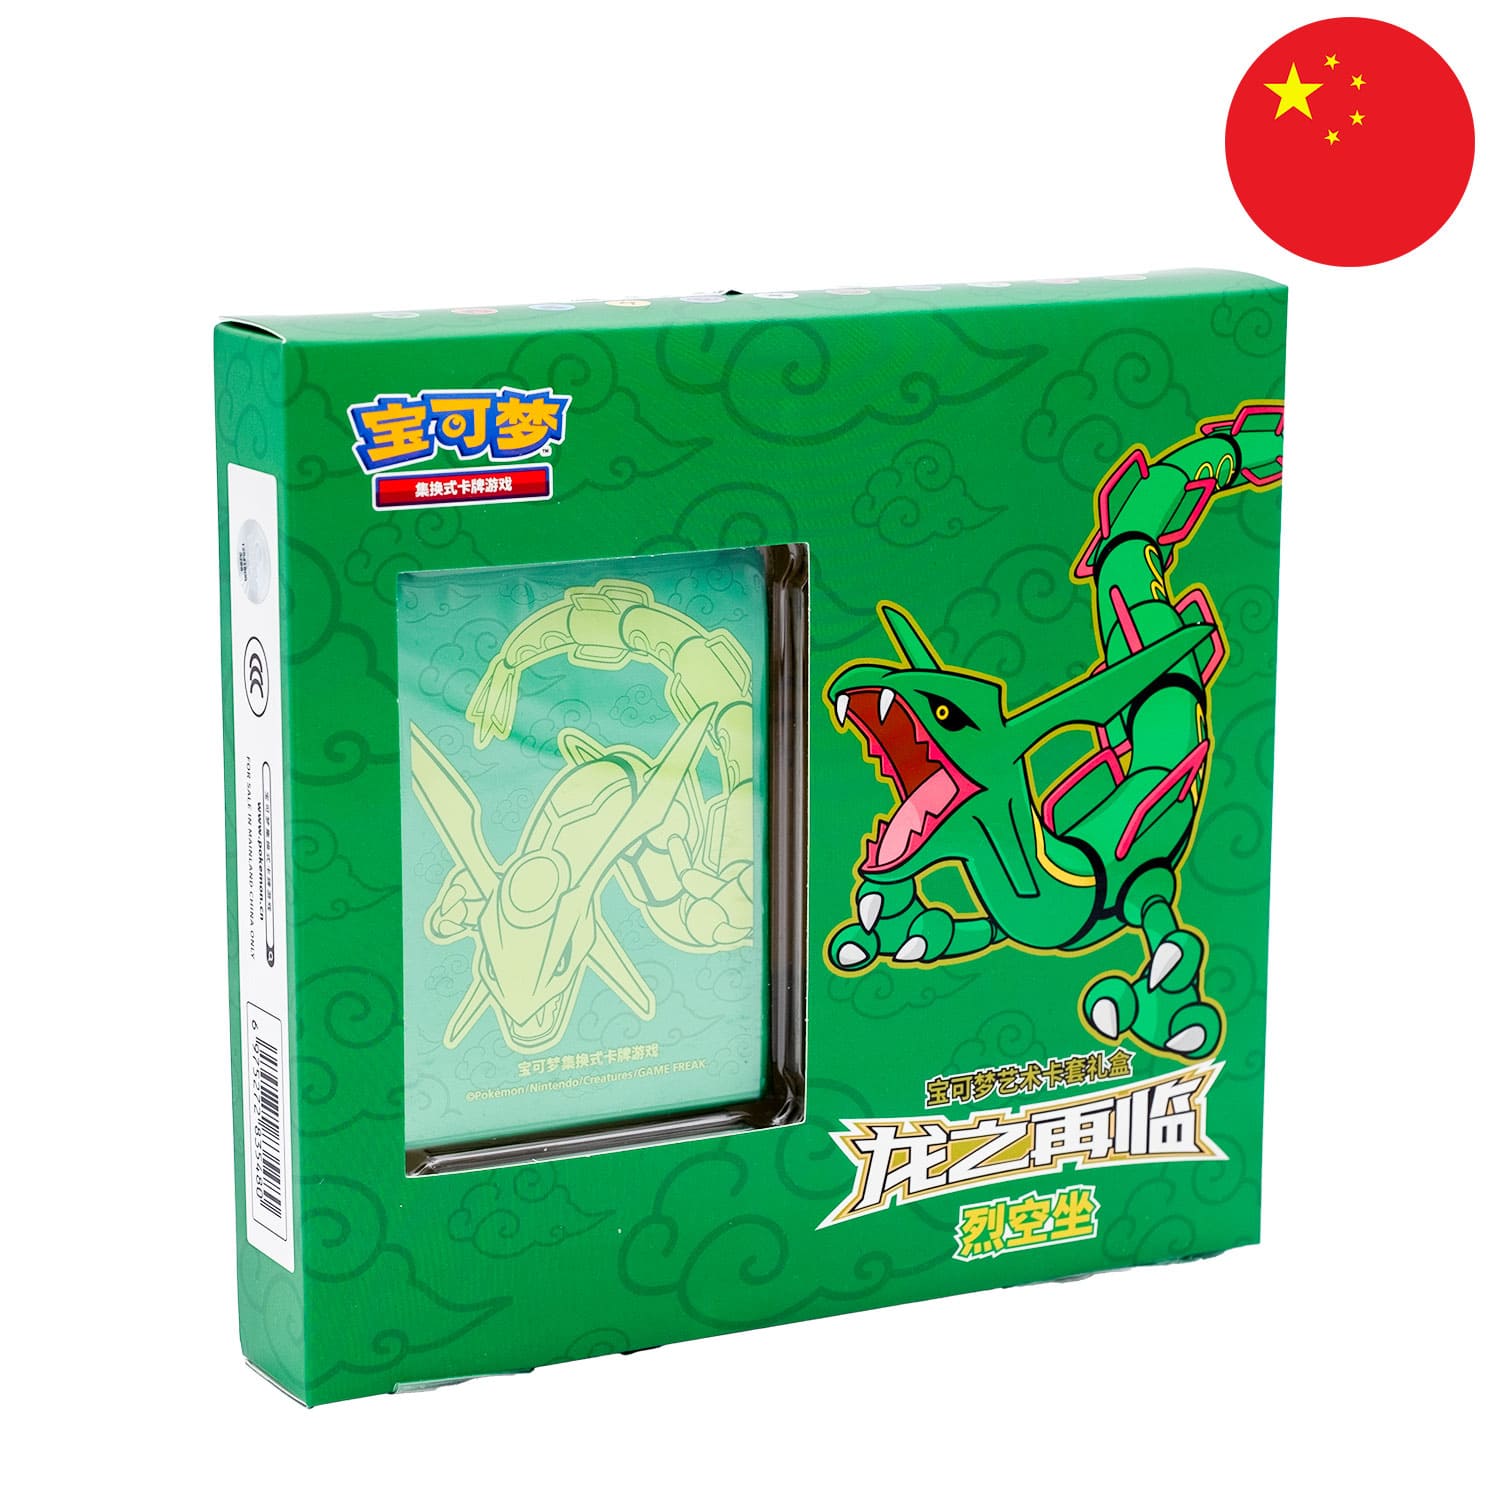 Die grüne Rayquaza Sleeve Box aus China mit den Sleeves, frontal & schräg als Hauptbild mit der Flagge Chinas in der Ecke.